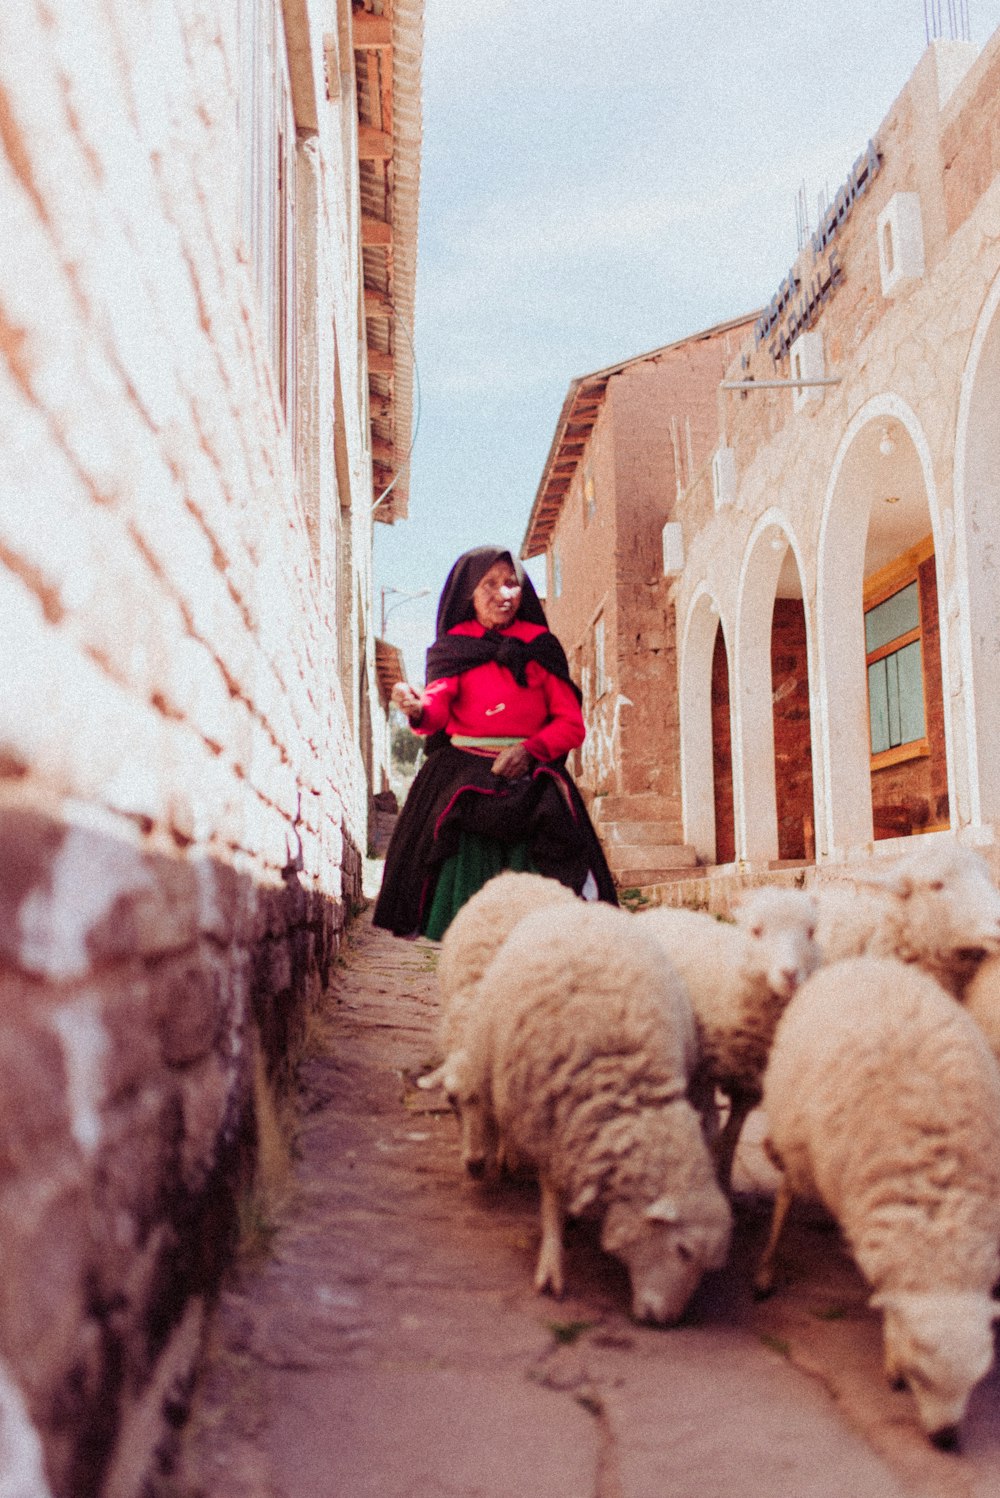 girl wearing red dress talking behind sheep during daytime